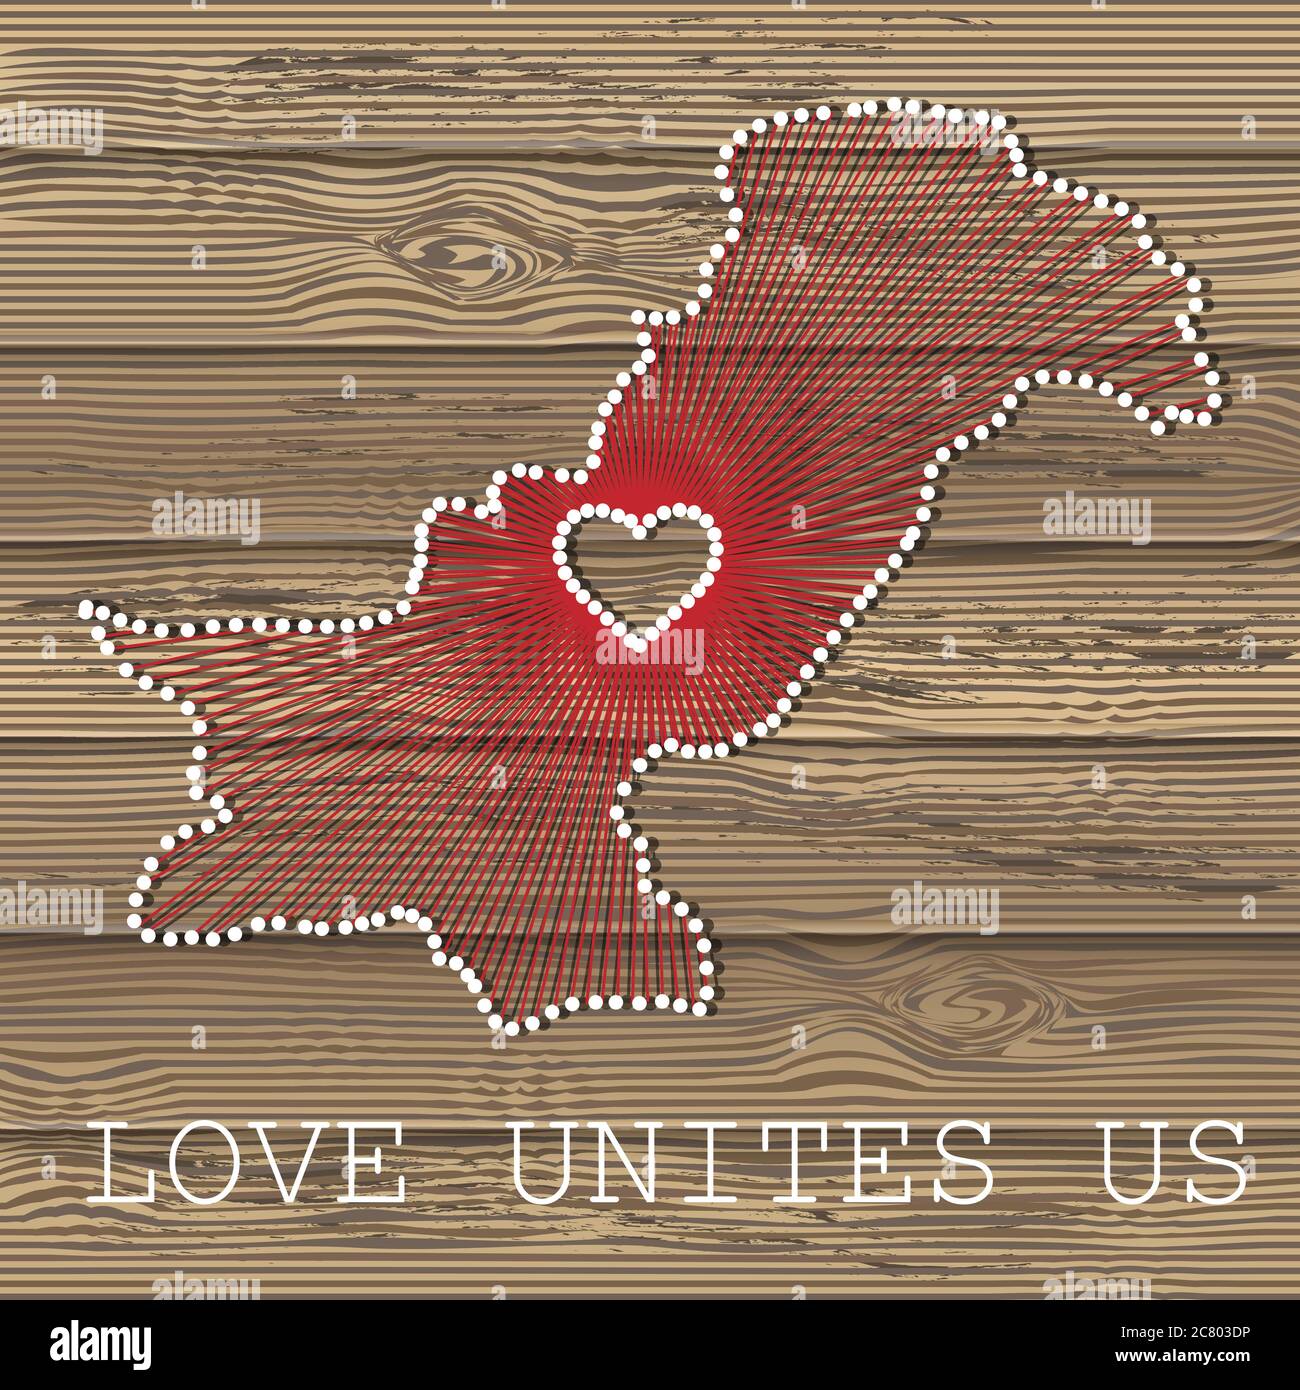 Pakistan Kunst Vektor Karte mit Herz. Fadenkunst, Garn und Stifte auf Holzplanken Textur. Liebe verbindet uns. Botschaft der Liebe. Pakistan Kunstkarte Stock Vektor